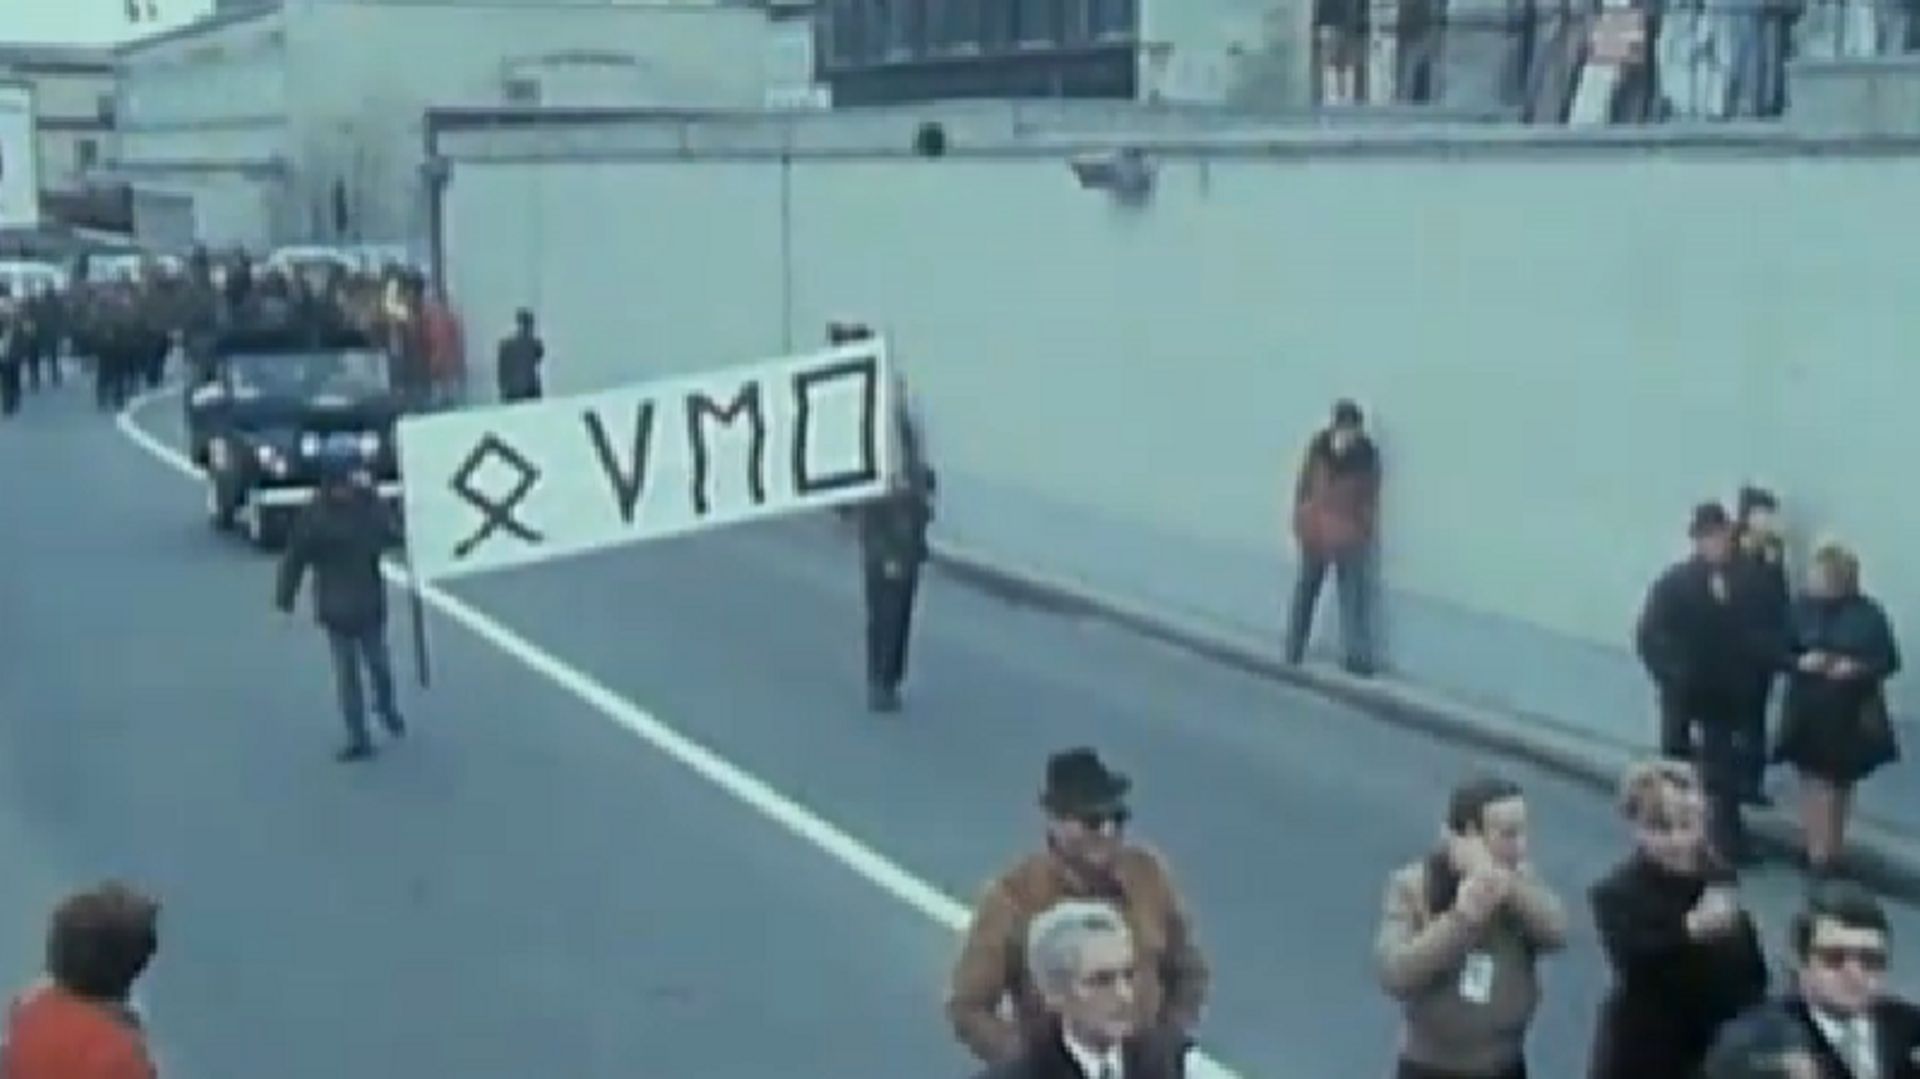 Le VMO, milice fondée par Bob Maes en 1951